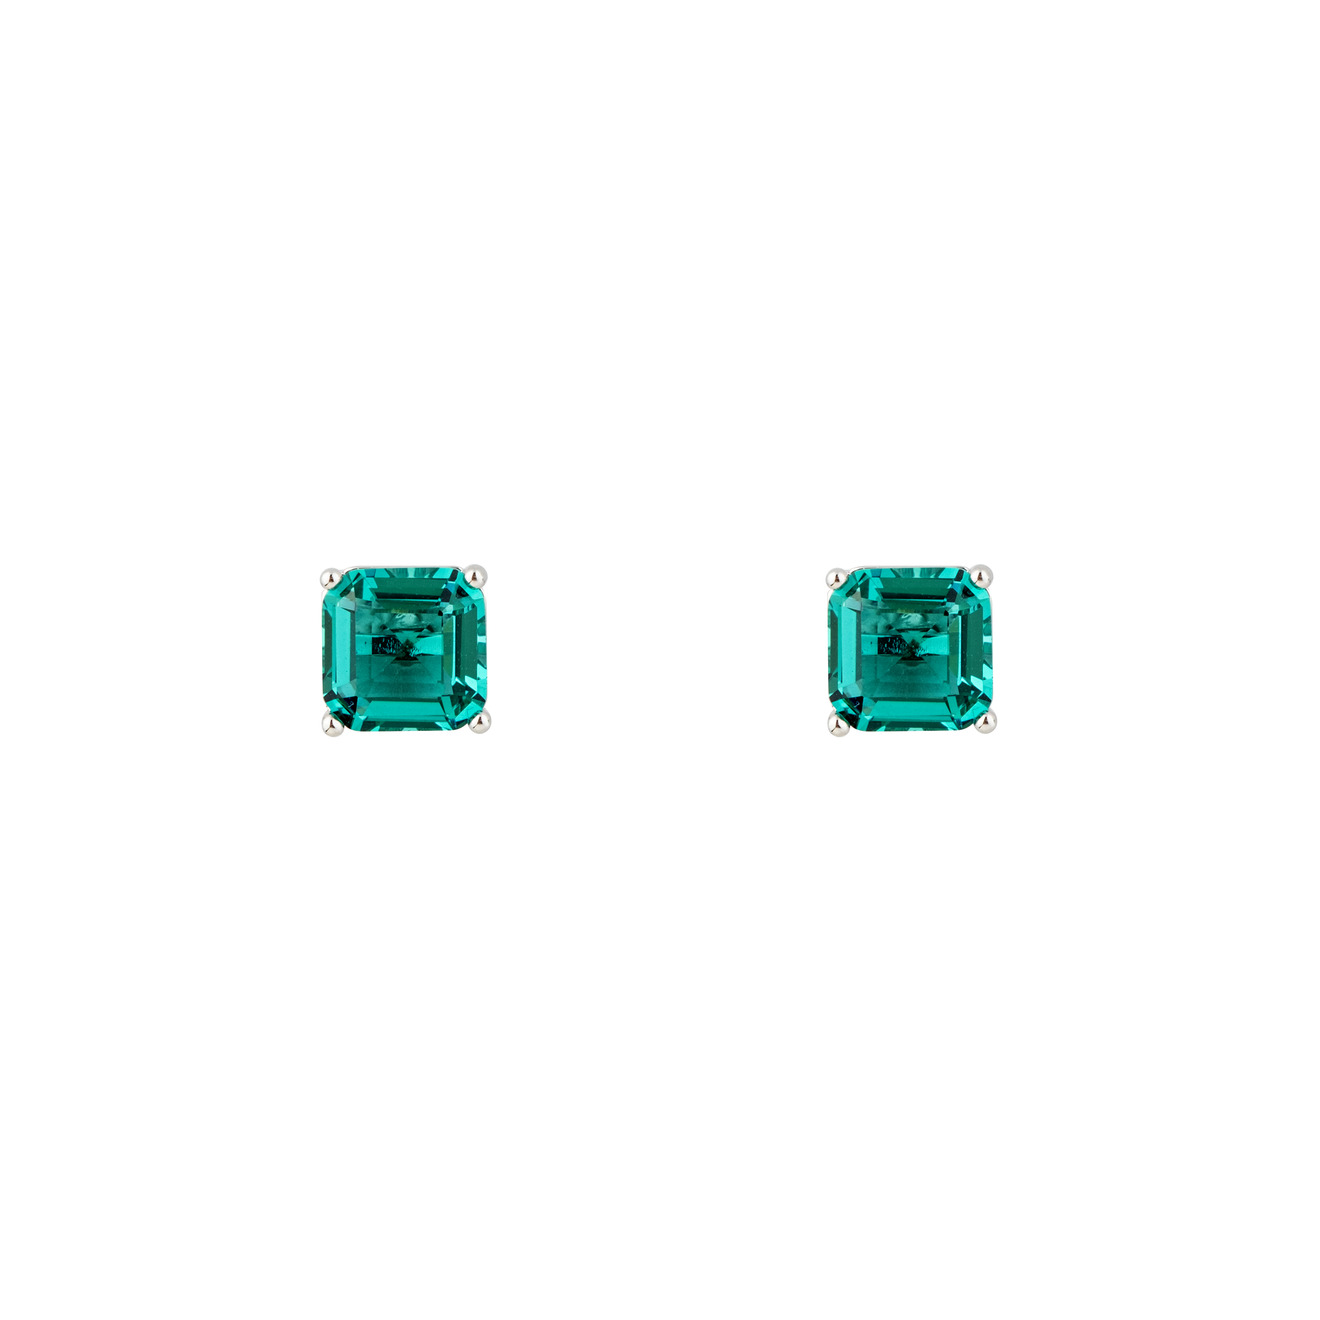 Herald Percy Серебристые серьги с зелеными кристаллами herald percy золотистый браслет с зелеными кристаллами